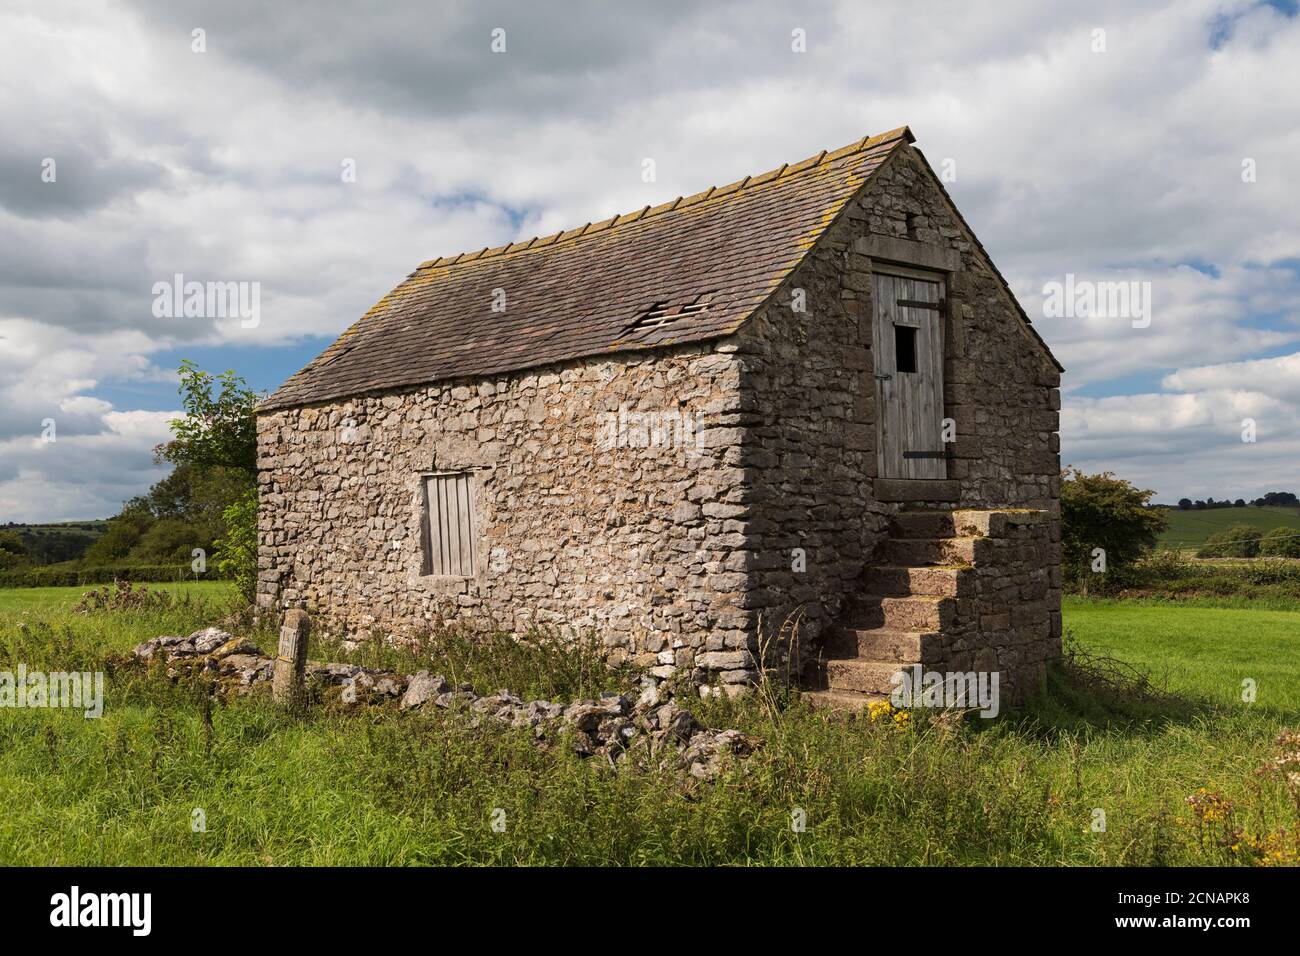 Image d'une ancienne grange du Derbyshire, prise dans le magnifique paysage autour de Matlock, Angleterre, Royaume-Uni Banque D'Images